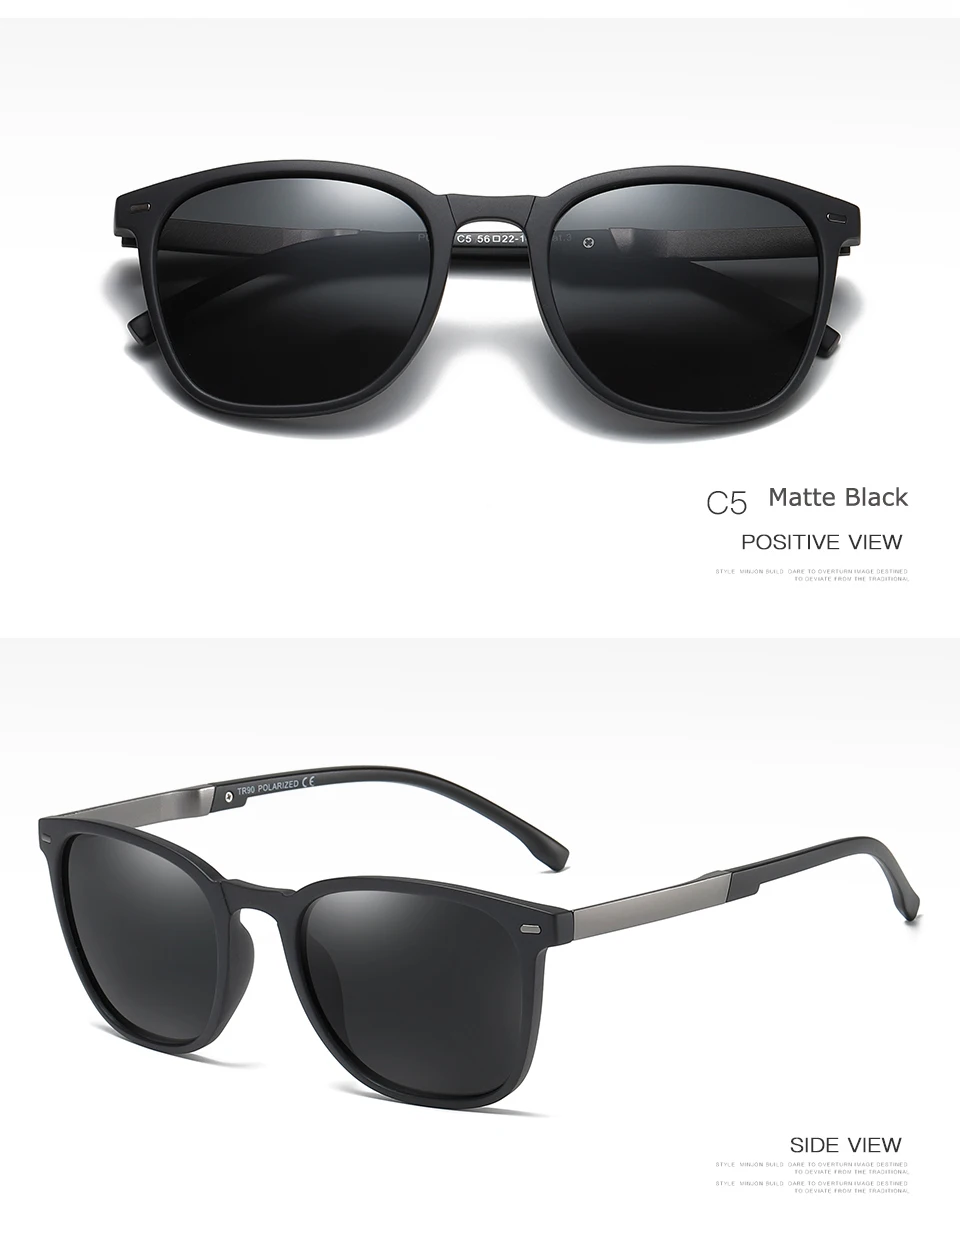 Ruosyling гибкие солнцезащитные очки матовые УФ 400 поляризационные мужские солнцезащитные очки TR сверхлегкие матовые черные Ретро темные очки люксовый бренд